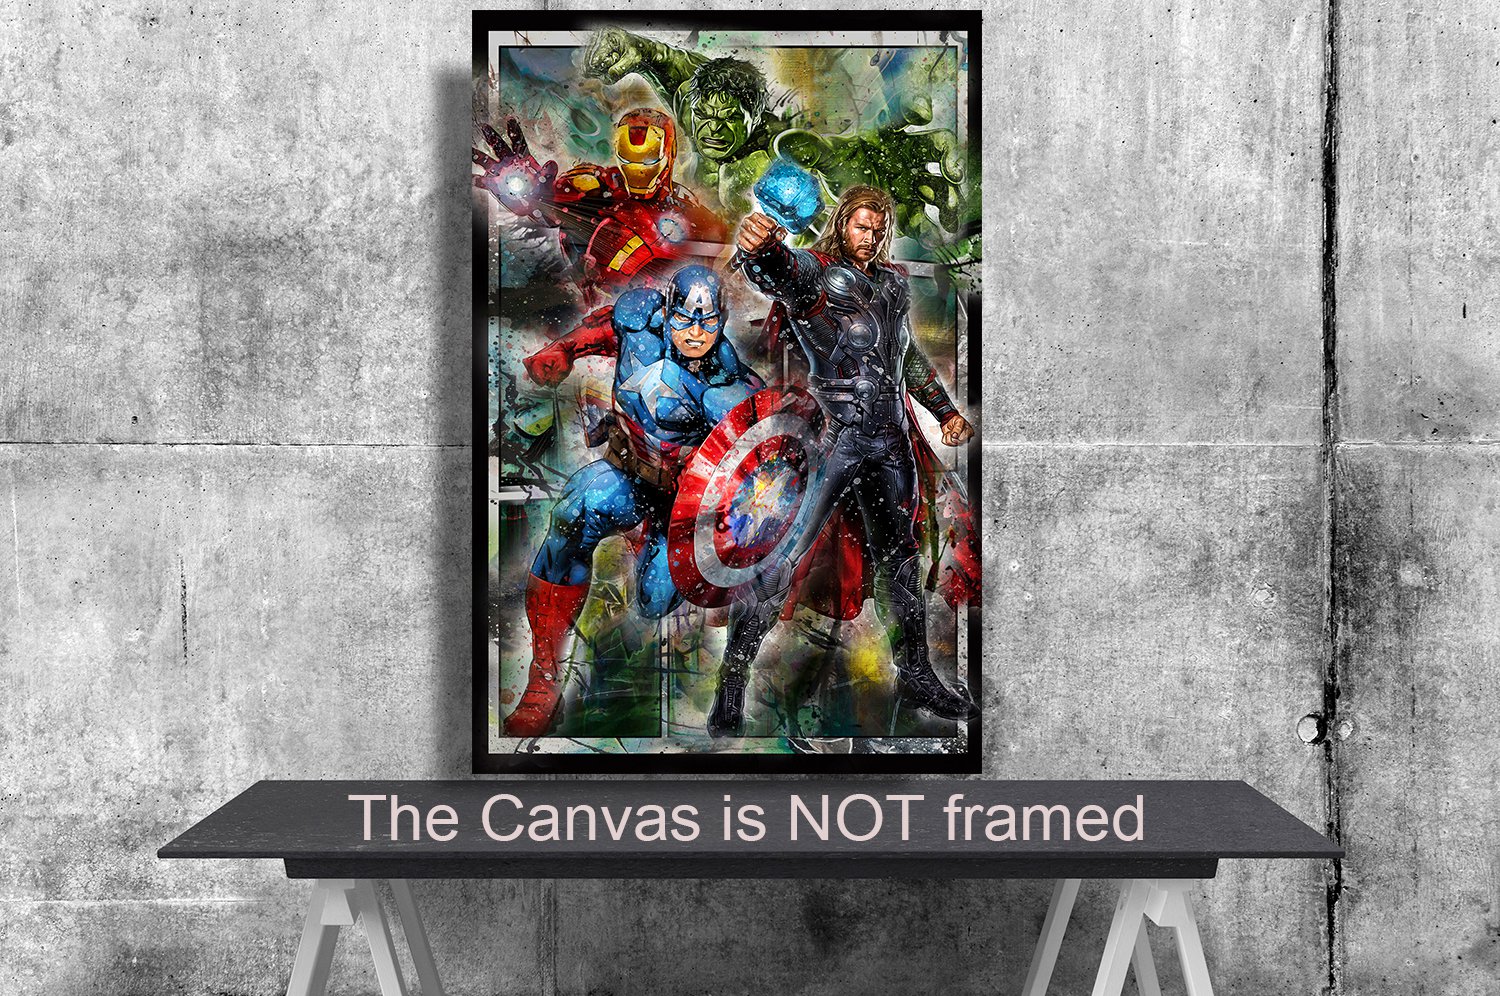 Avengers Endgame 18"x28" (45cm/70cm) Poster